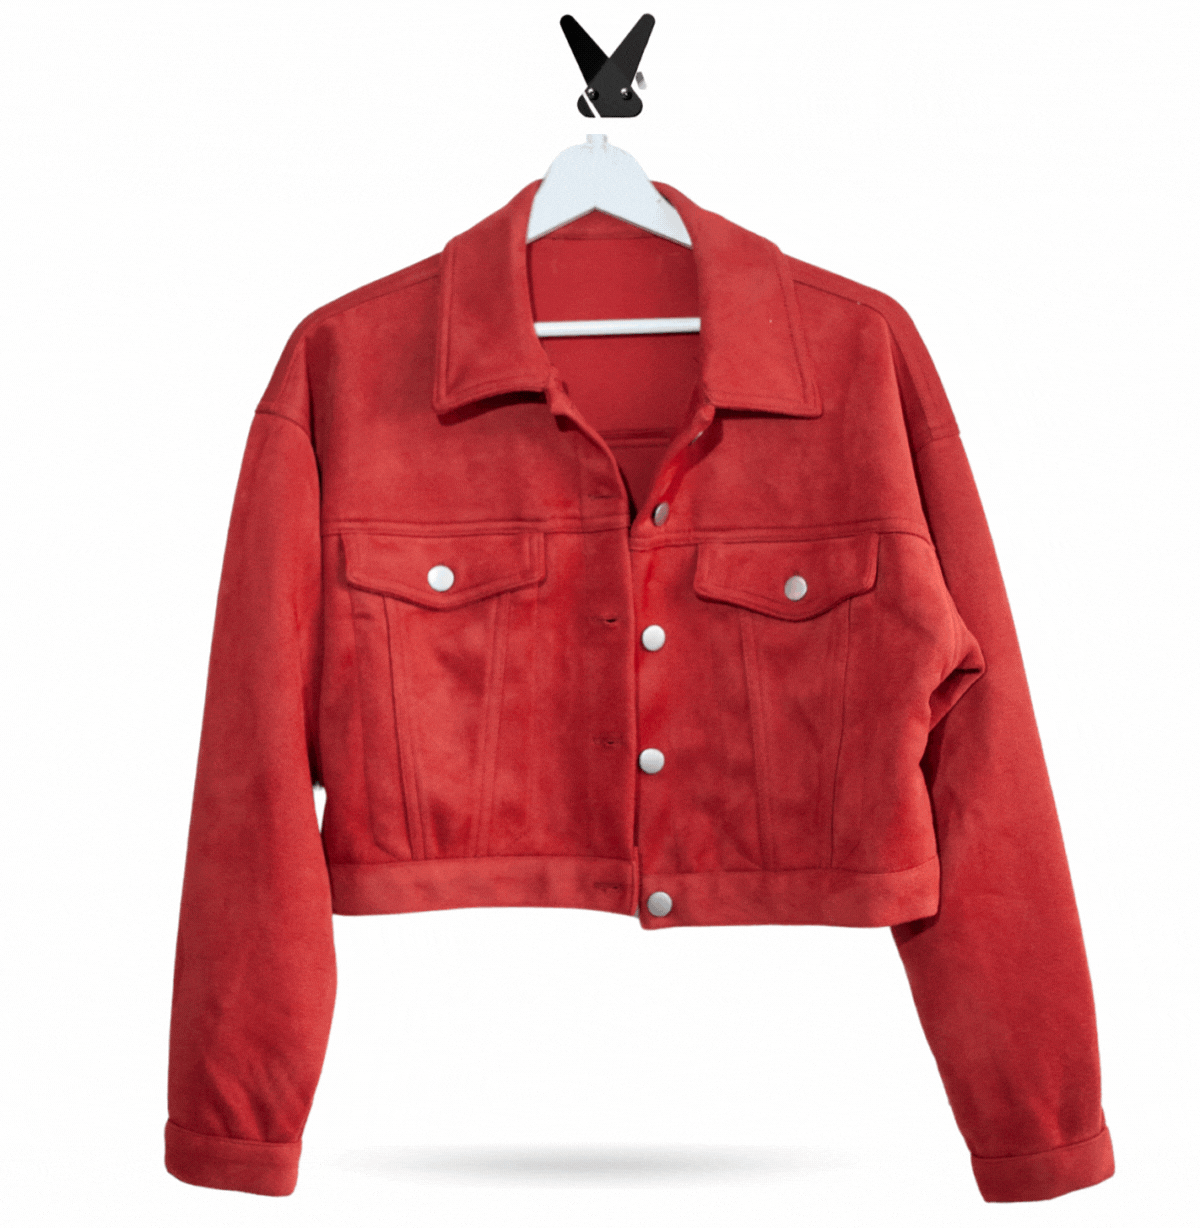 Upcycled Jacket Shirts & Tops Lara Dee Artistry